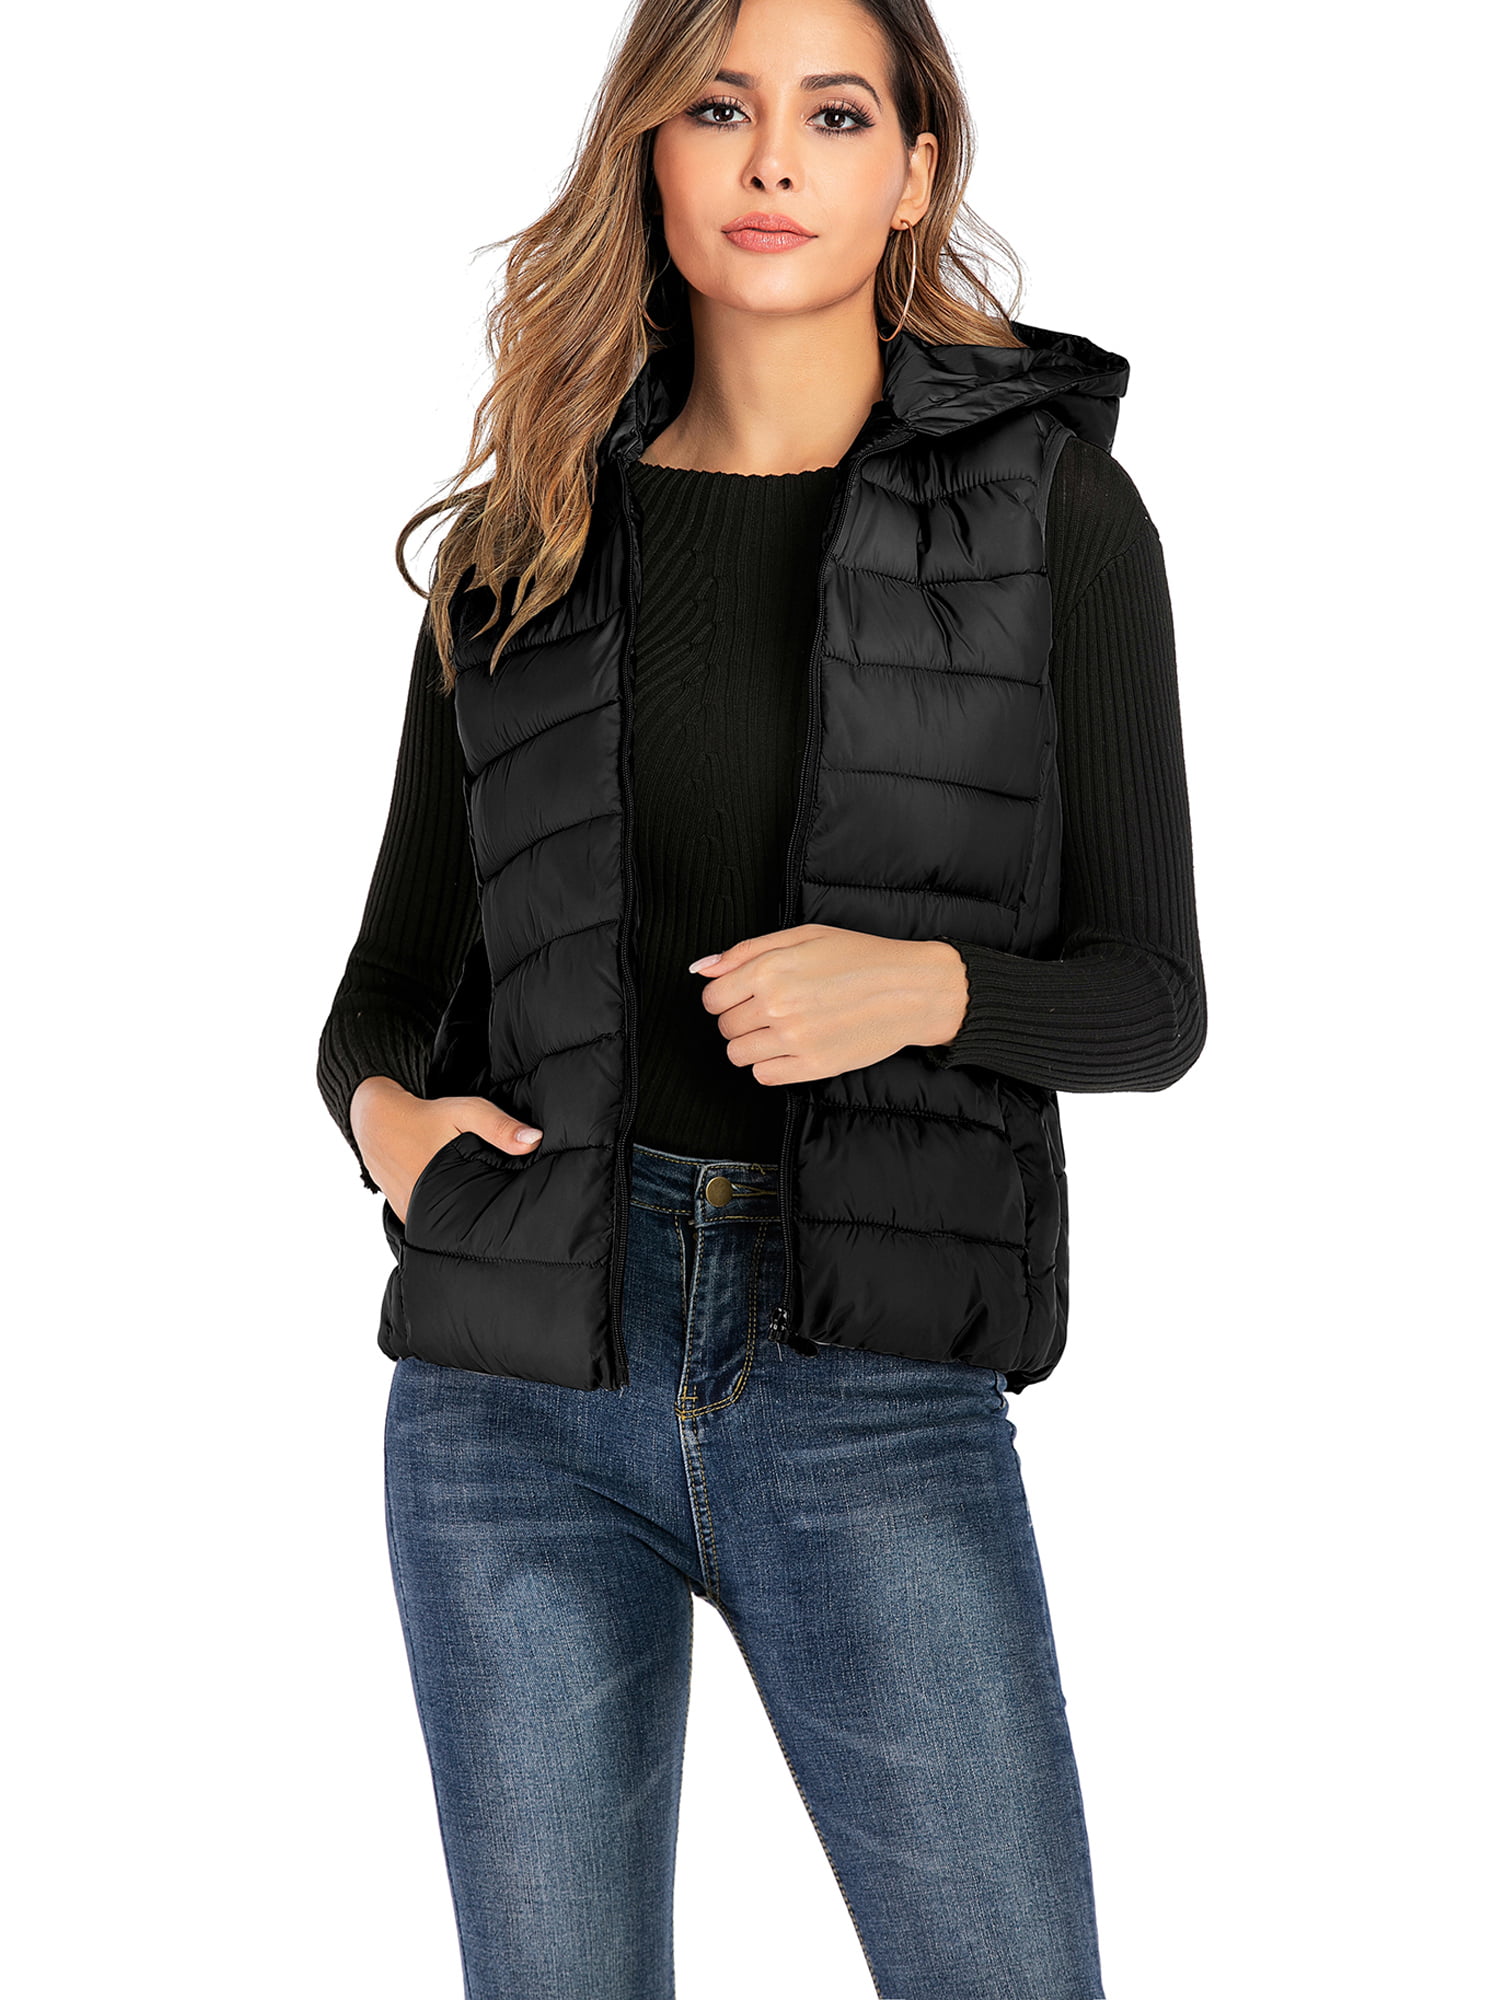 DODOING Sleeveless Jacket Lightweight Packable Puffer Vest Zip up